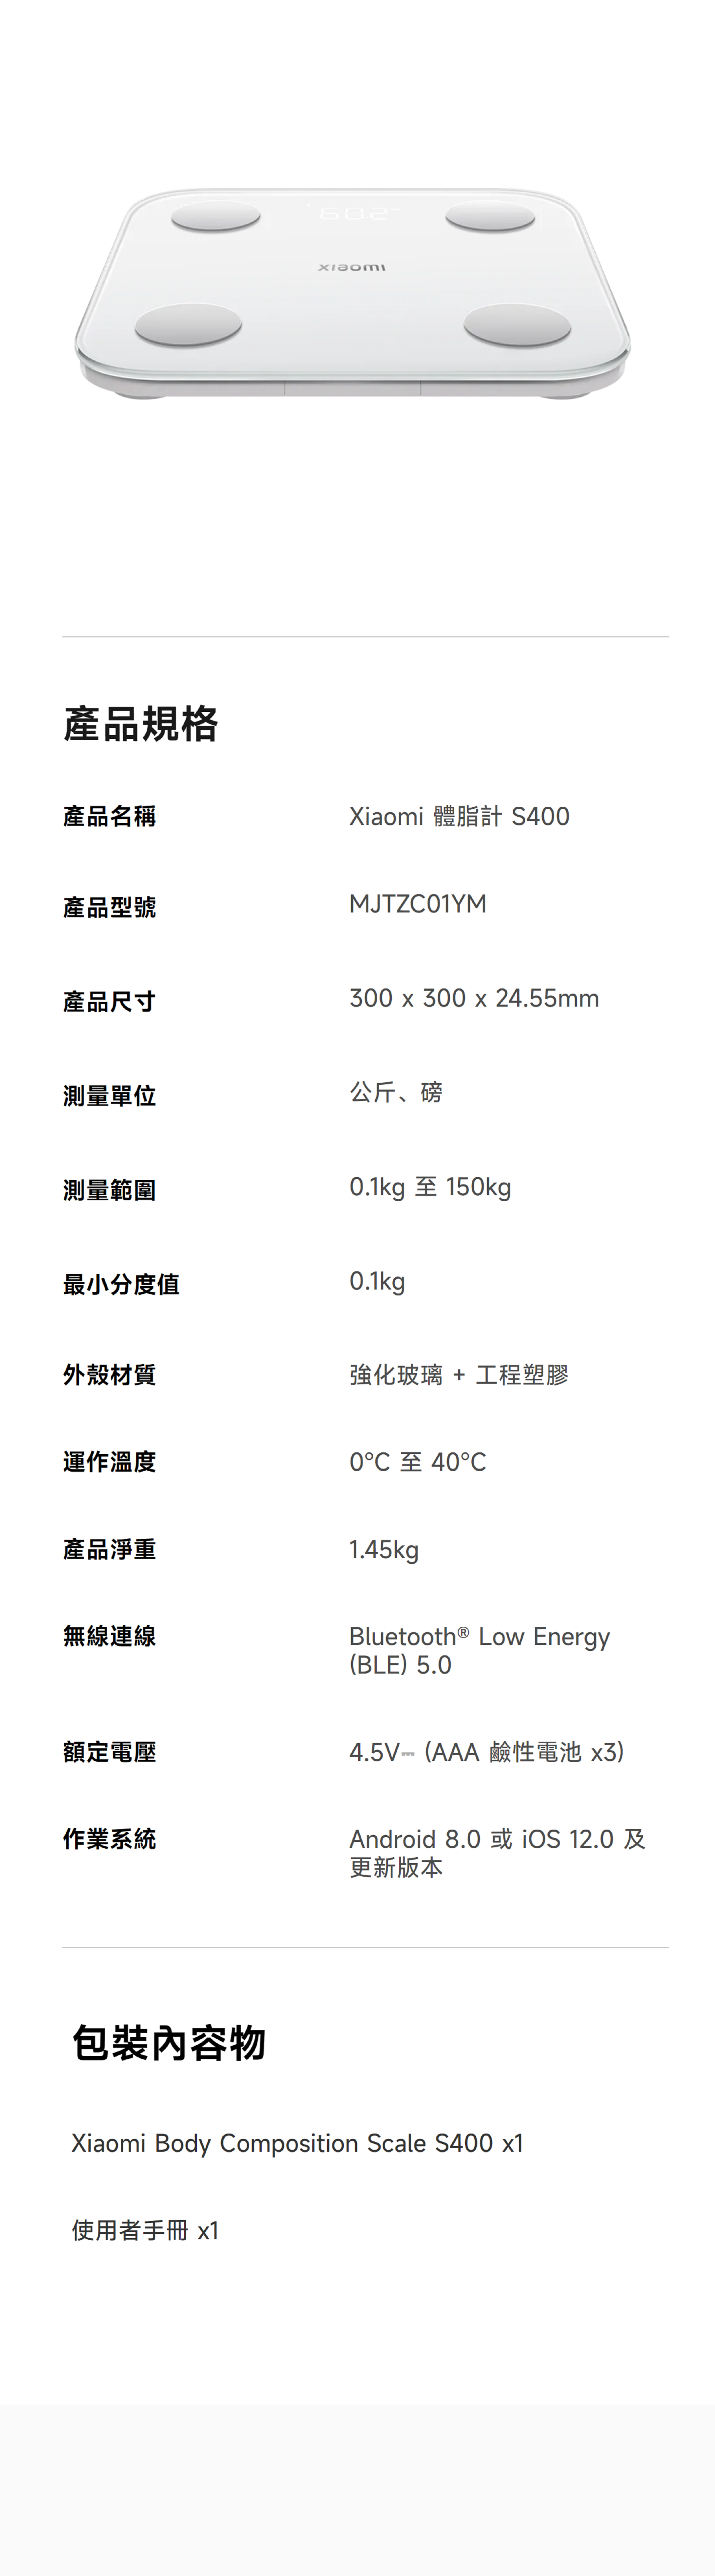 產品規格產品名稱產品型號Xiaomi 體脂計 S400MJTZC01YM產品尺寸300 x 300 x 24.55mm測量單位公斤、磅測量範圍0.1kg 至 150kg最小分度值0.1kg外殼材質強化玻璃 + 工程塑膠運作溫度0至40℃產品淨重無線連線額定電壓1.45kgBluetooth® Low Energy(BLE)5.04.5V(AAA鹼性電池x3)作業系統Android 8.0或 12.0及更新版本包裝內容物Xiaomi Body Composition Scale S400 x1使用者手冊 x1